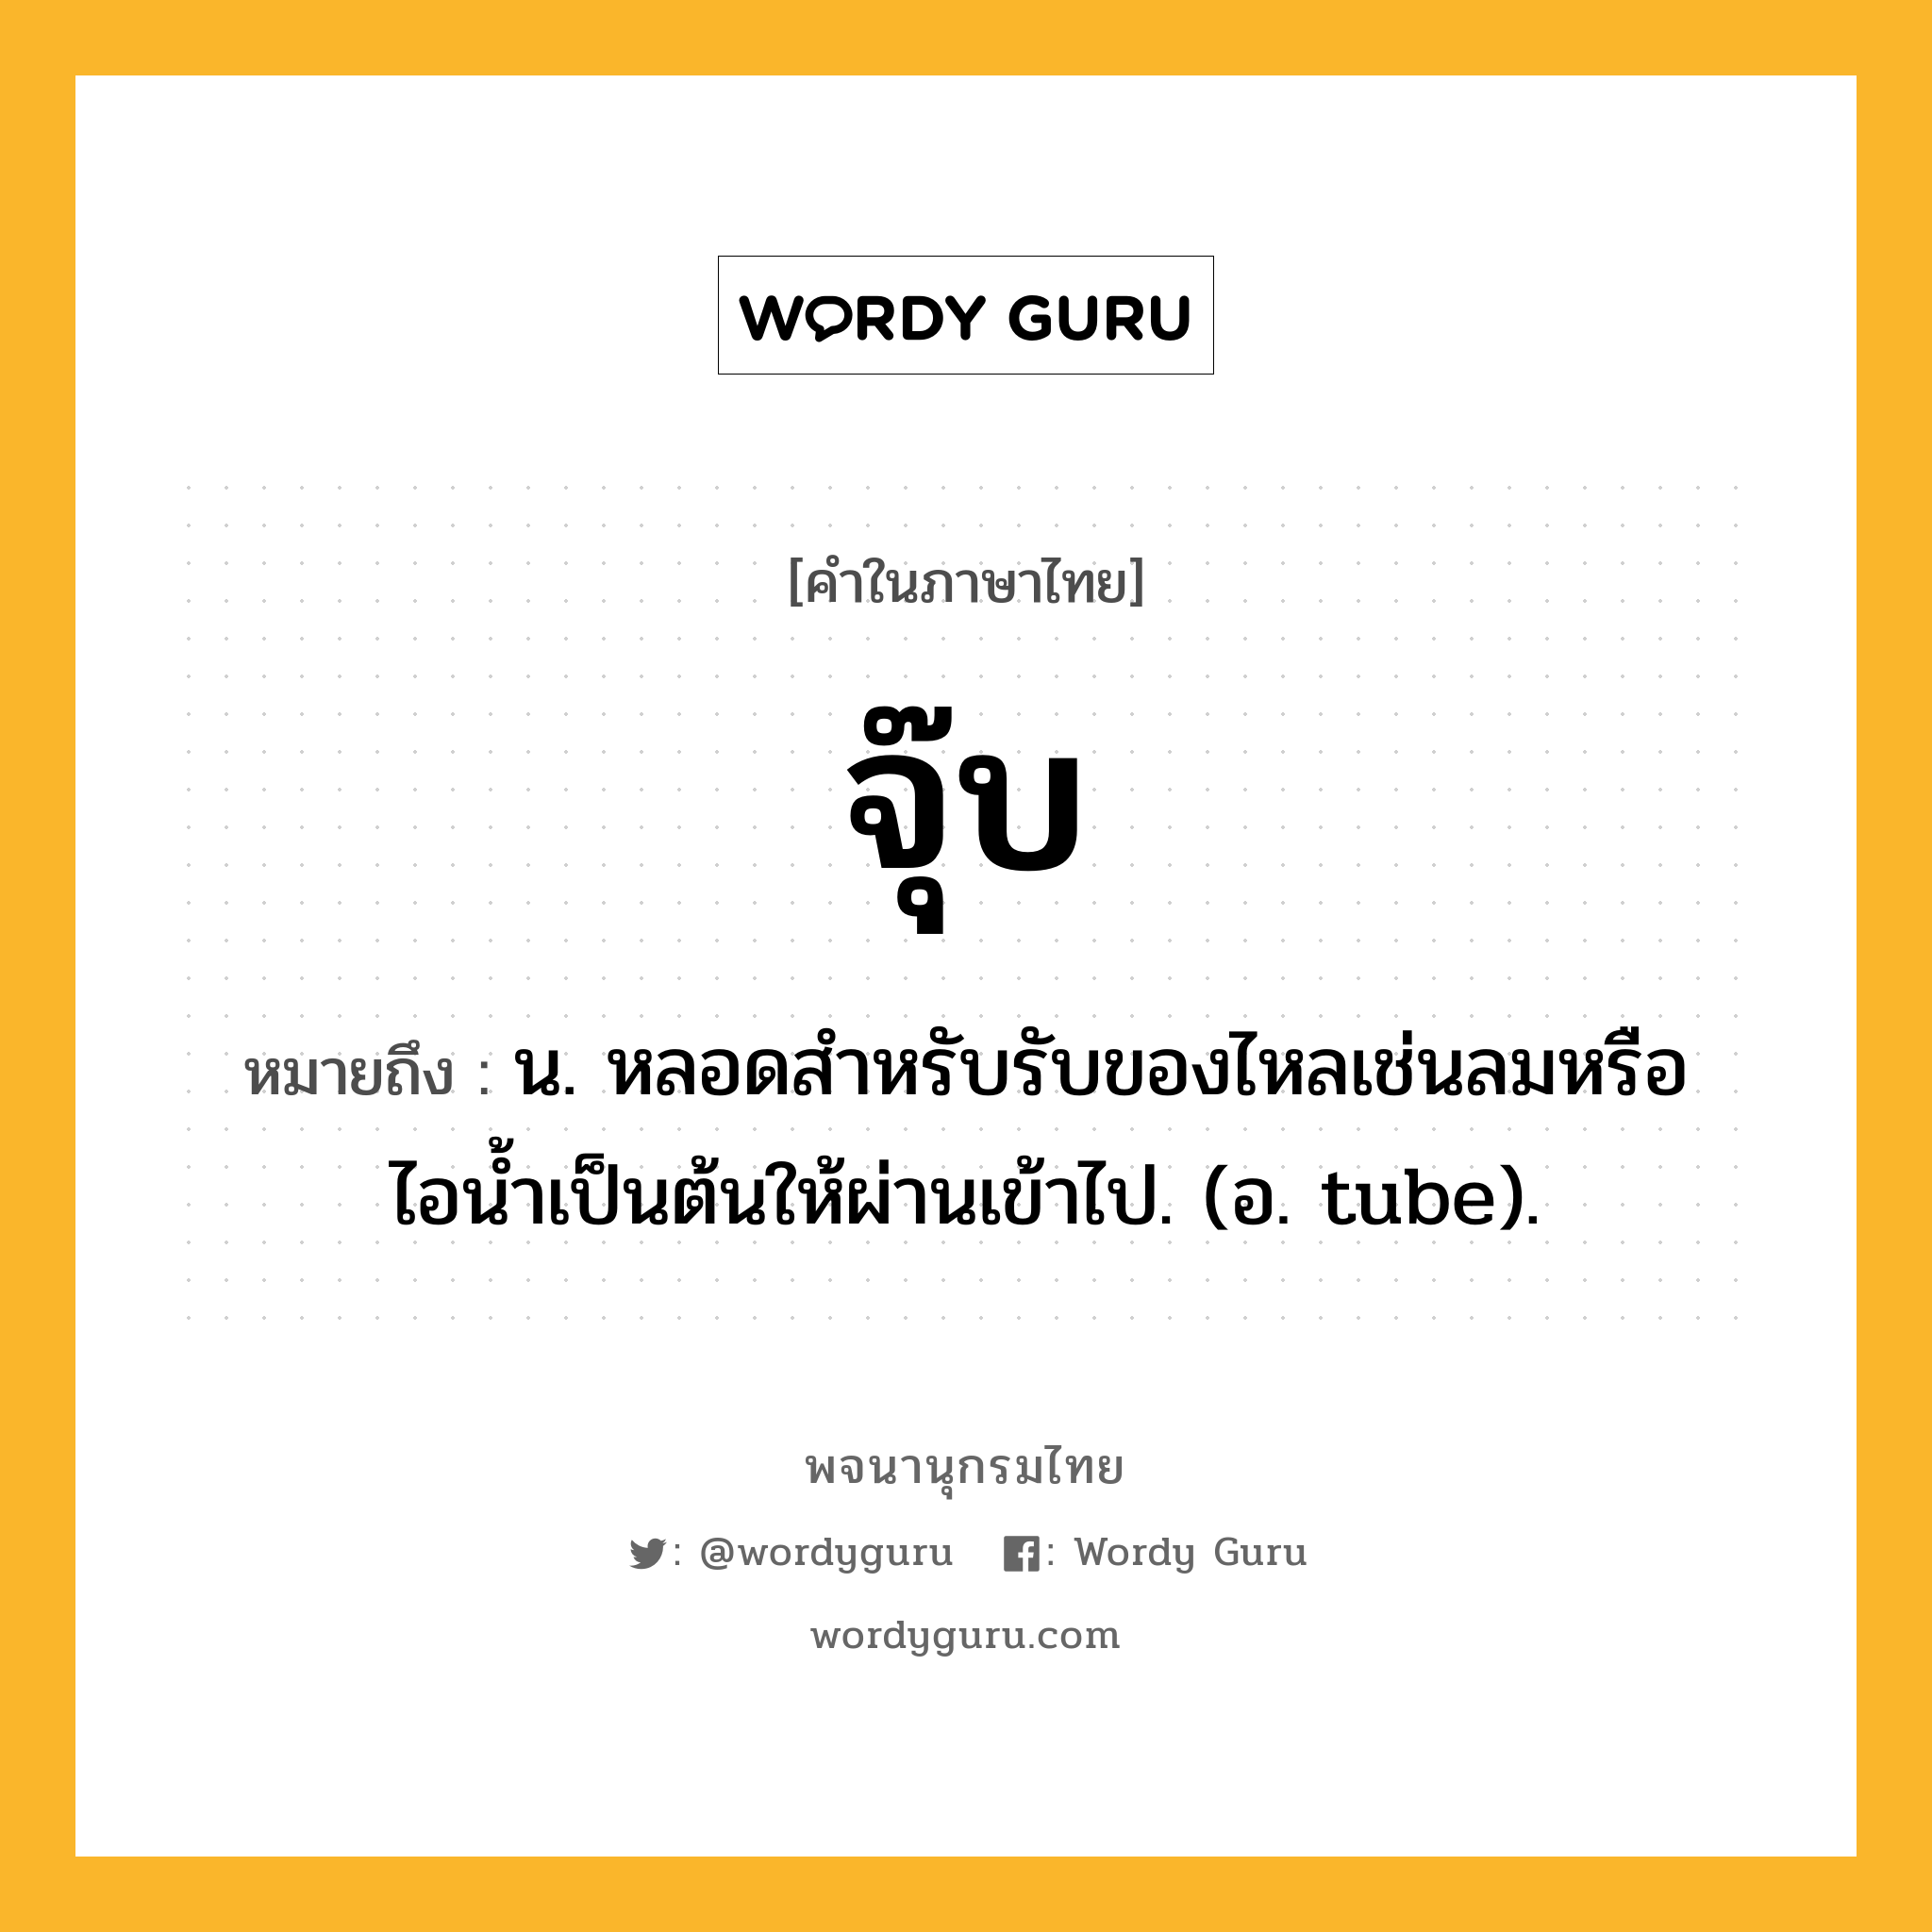 จุ๊บ หมายถึงอะไร?, คำในภาษาไทย จุ๊บ หมายถึง น. หลอดสําหรับรับของไหลเช่นลมหรือไอนํ้าเป็นต้นให้ผ่านเข้าไป. (อ. tube).